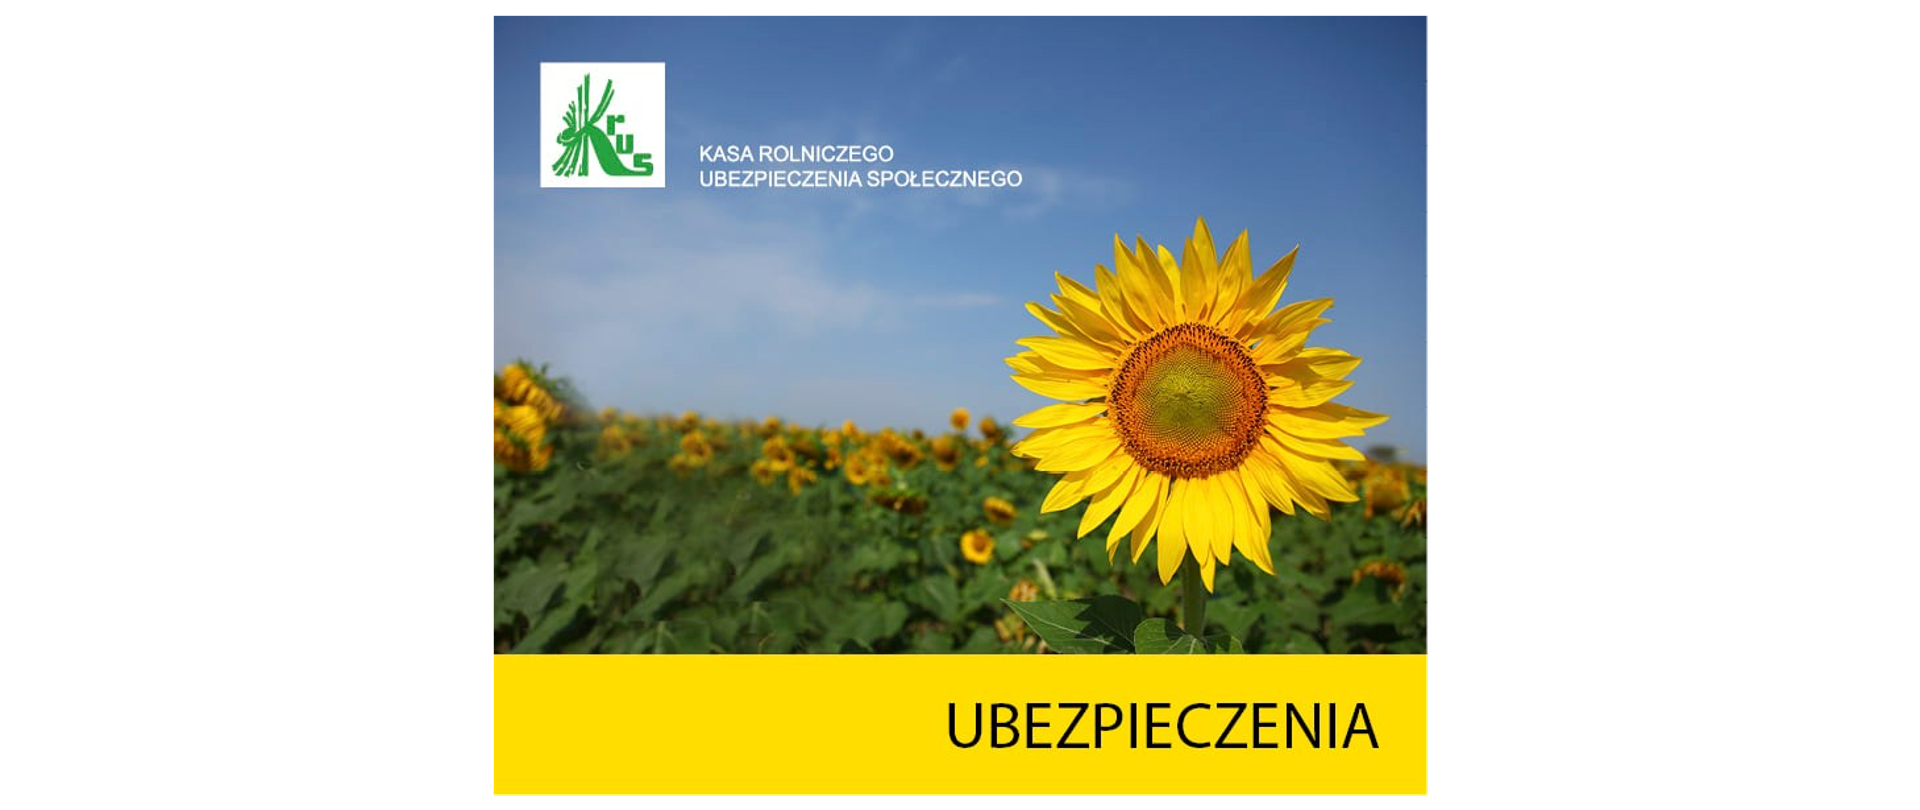 obrazek przedstawia słonecznik z napisem ubezpieczenia i zielonym logo Kasa Rolniczego Ubezpieczenia Społecznego